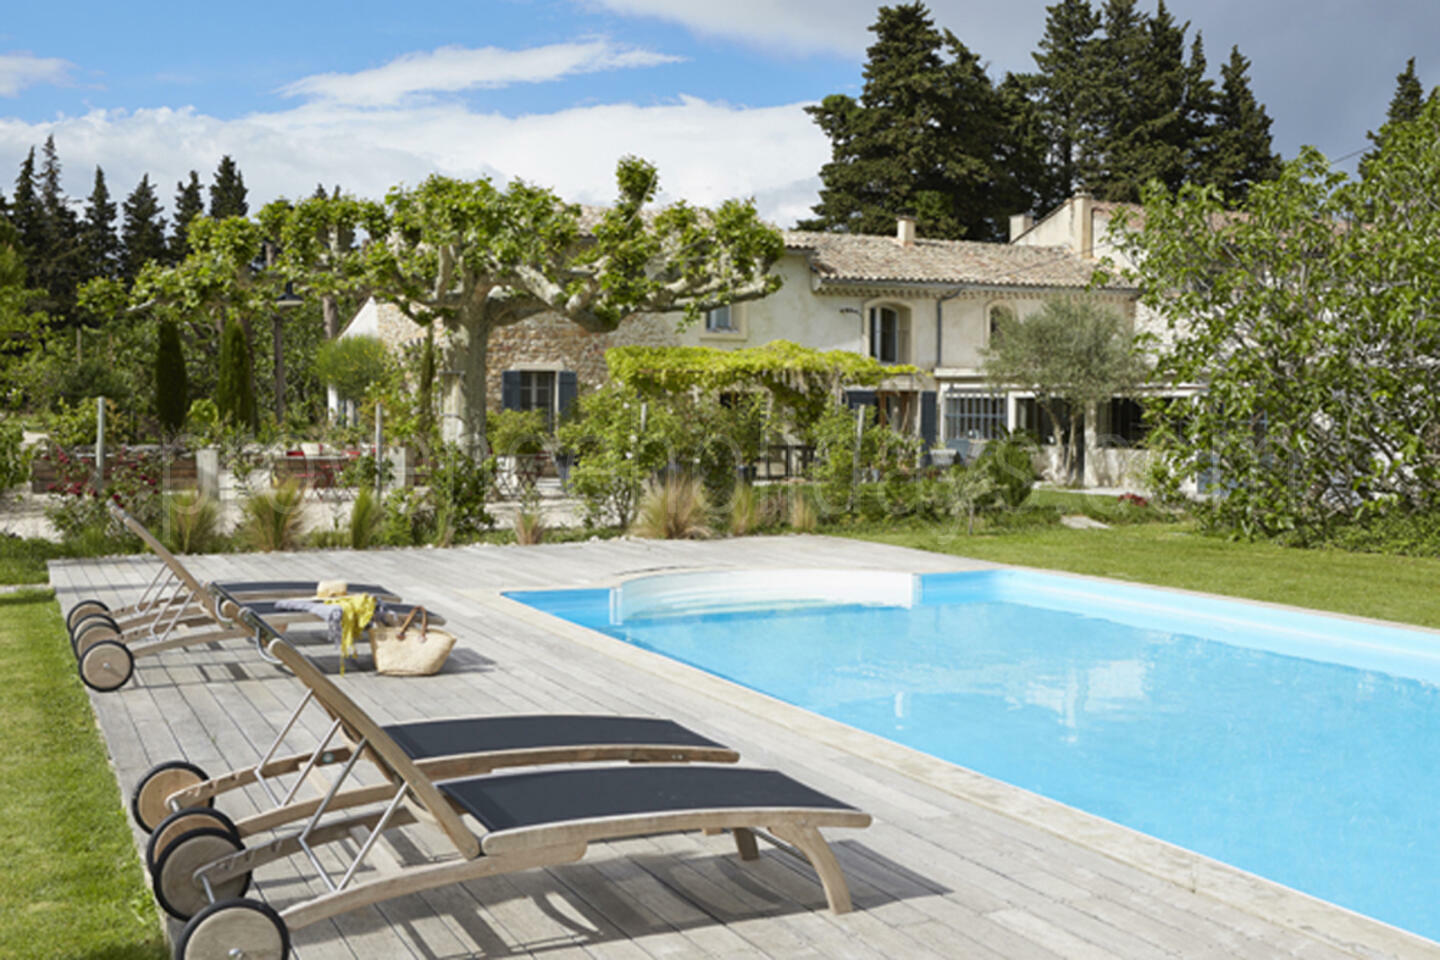 Location de vacances acceptant les animaux avec pool house -1 - Maison Sarrians: Villa: Pool